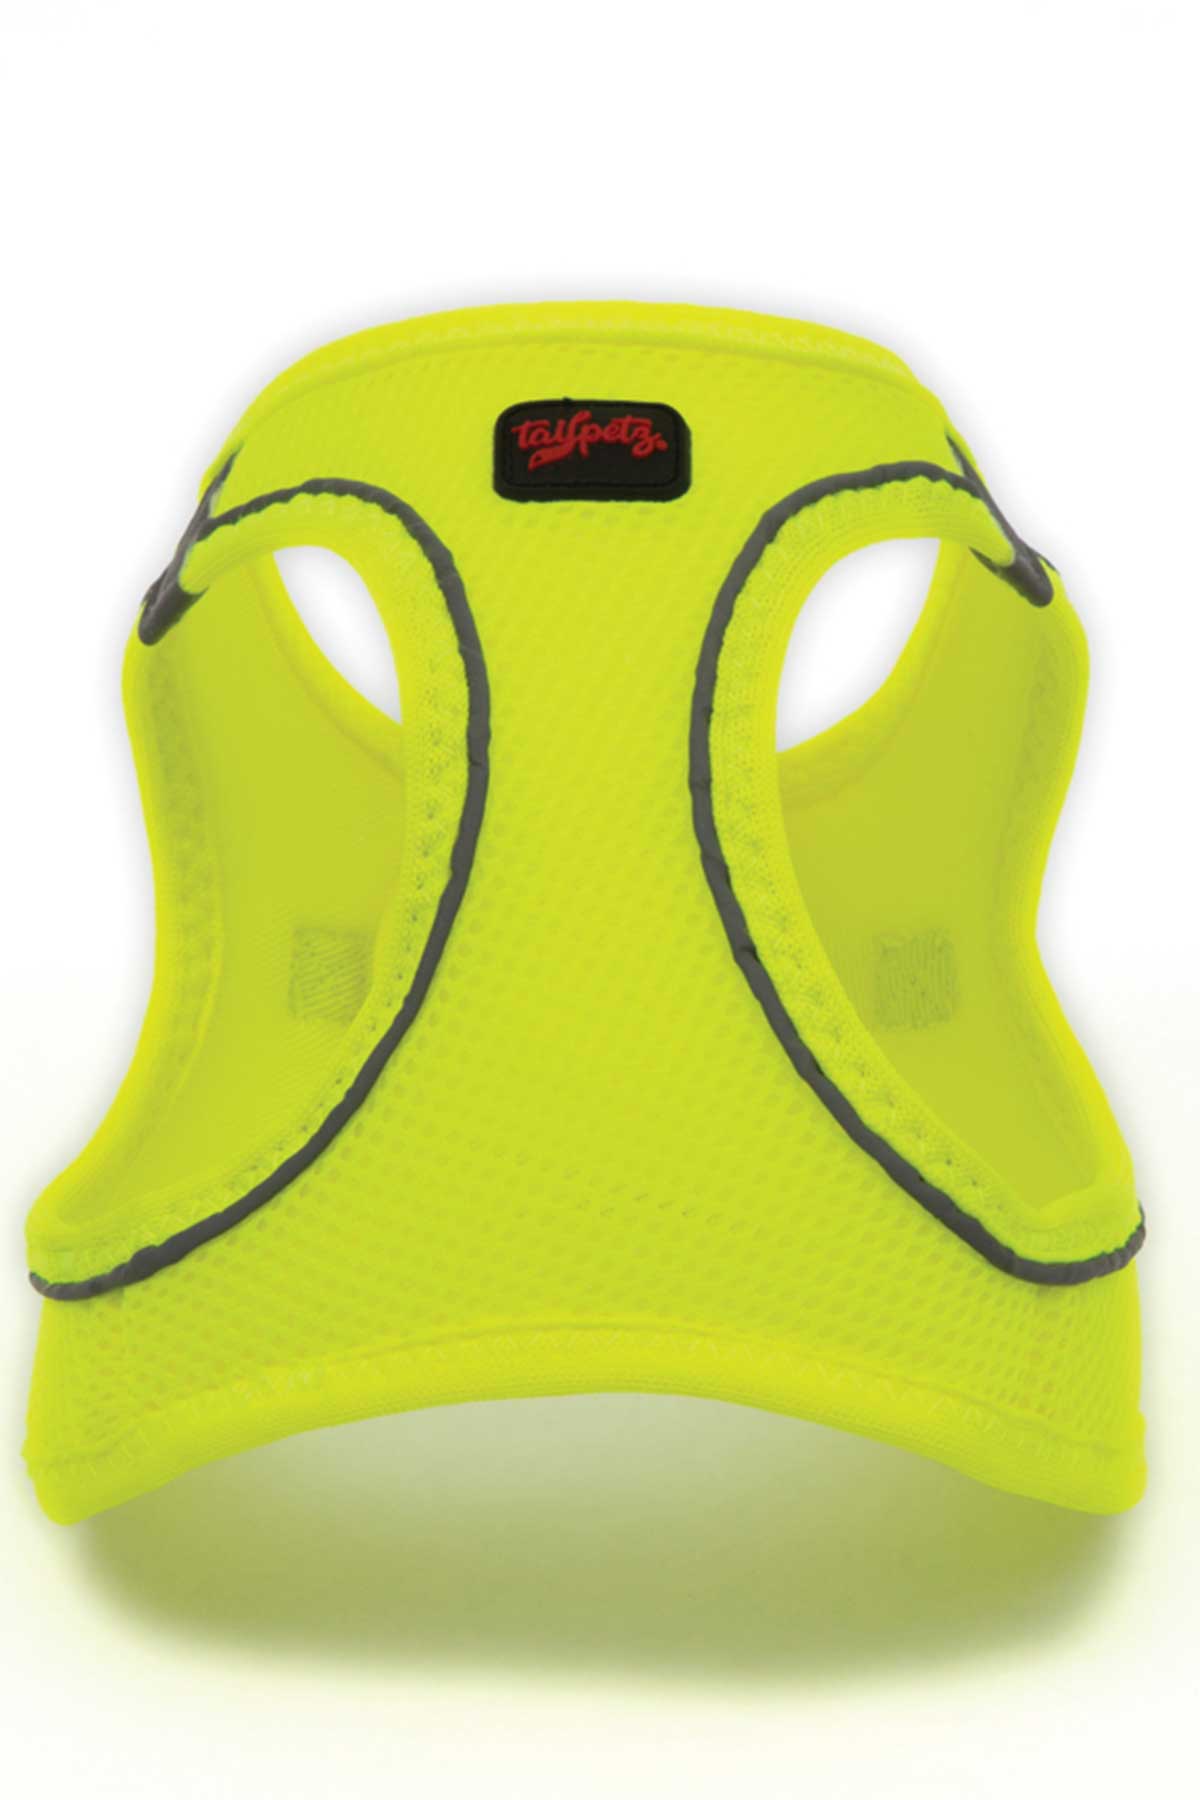 Tailpetz Air Mesh Harness Neon Lime Köpek Göğüs Tasması M